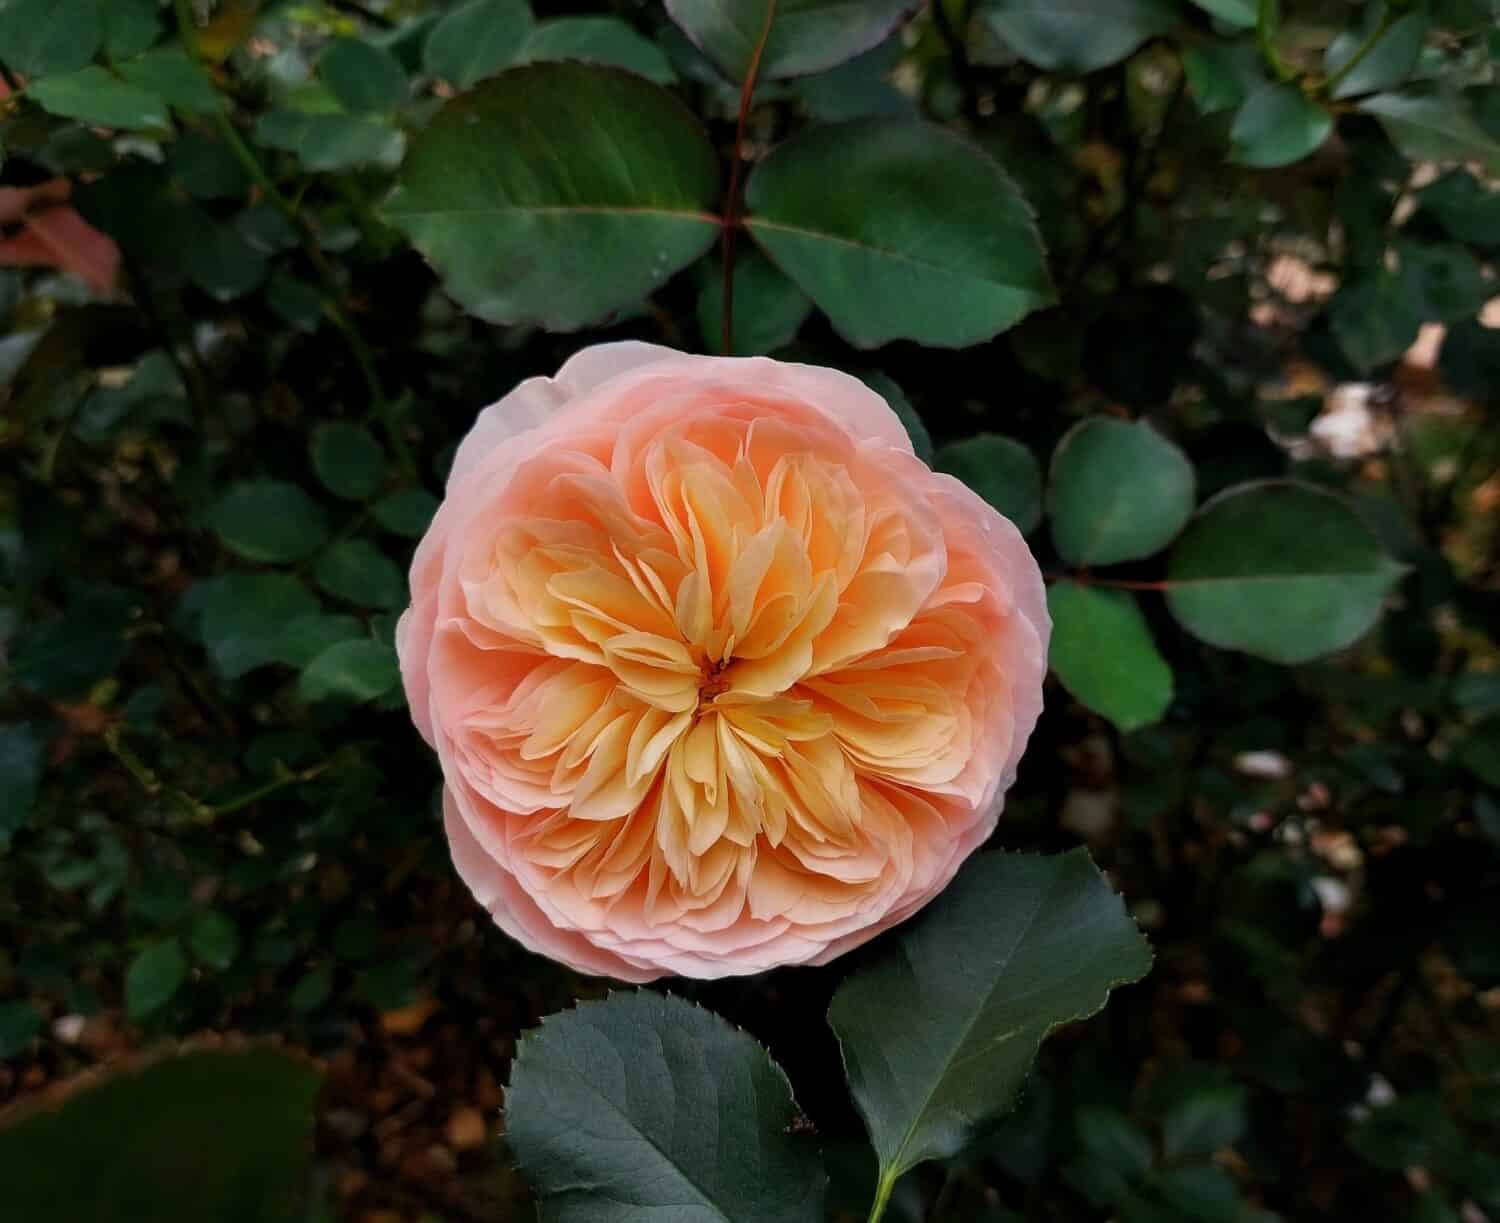 Rosa chiaro, pesca e arancio rosa Giulietta fiore nel giardino.  Fiore di rosa di Giulietta.